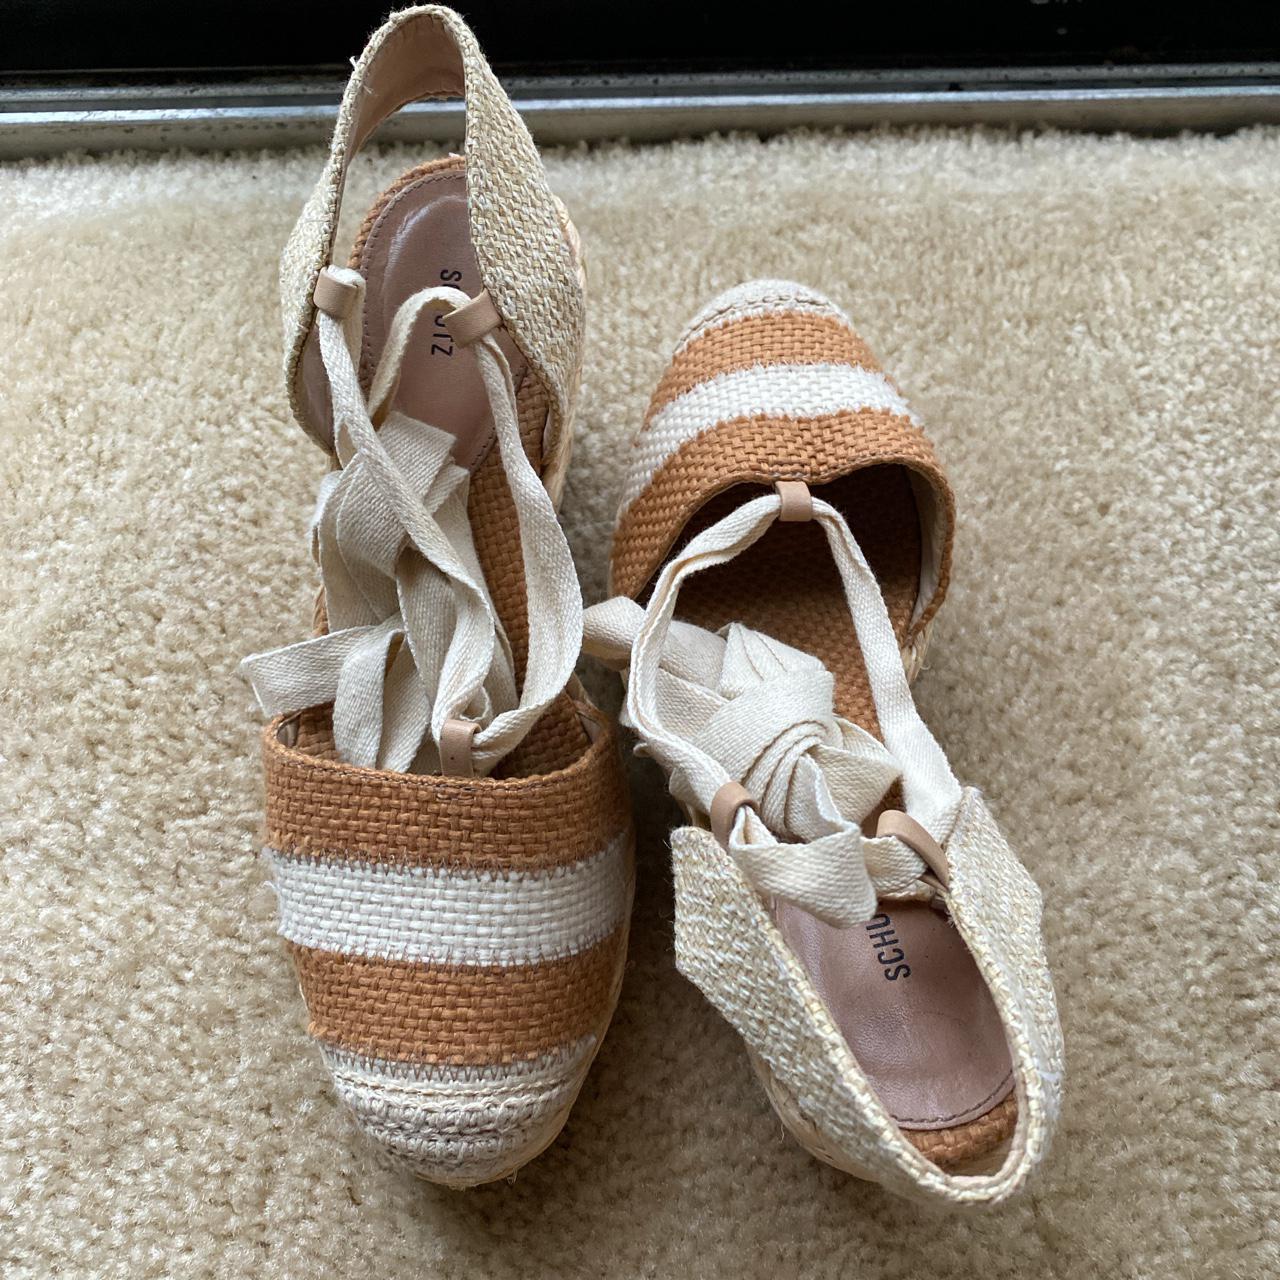 Schutz Women's Cream and Brown Sandals